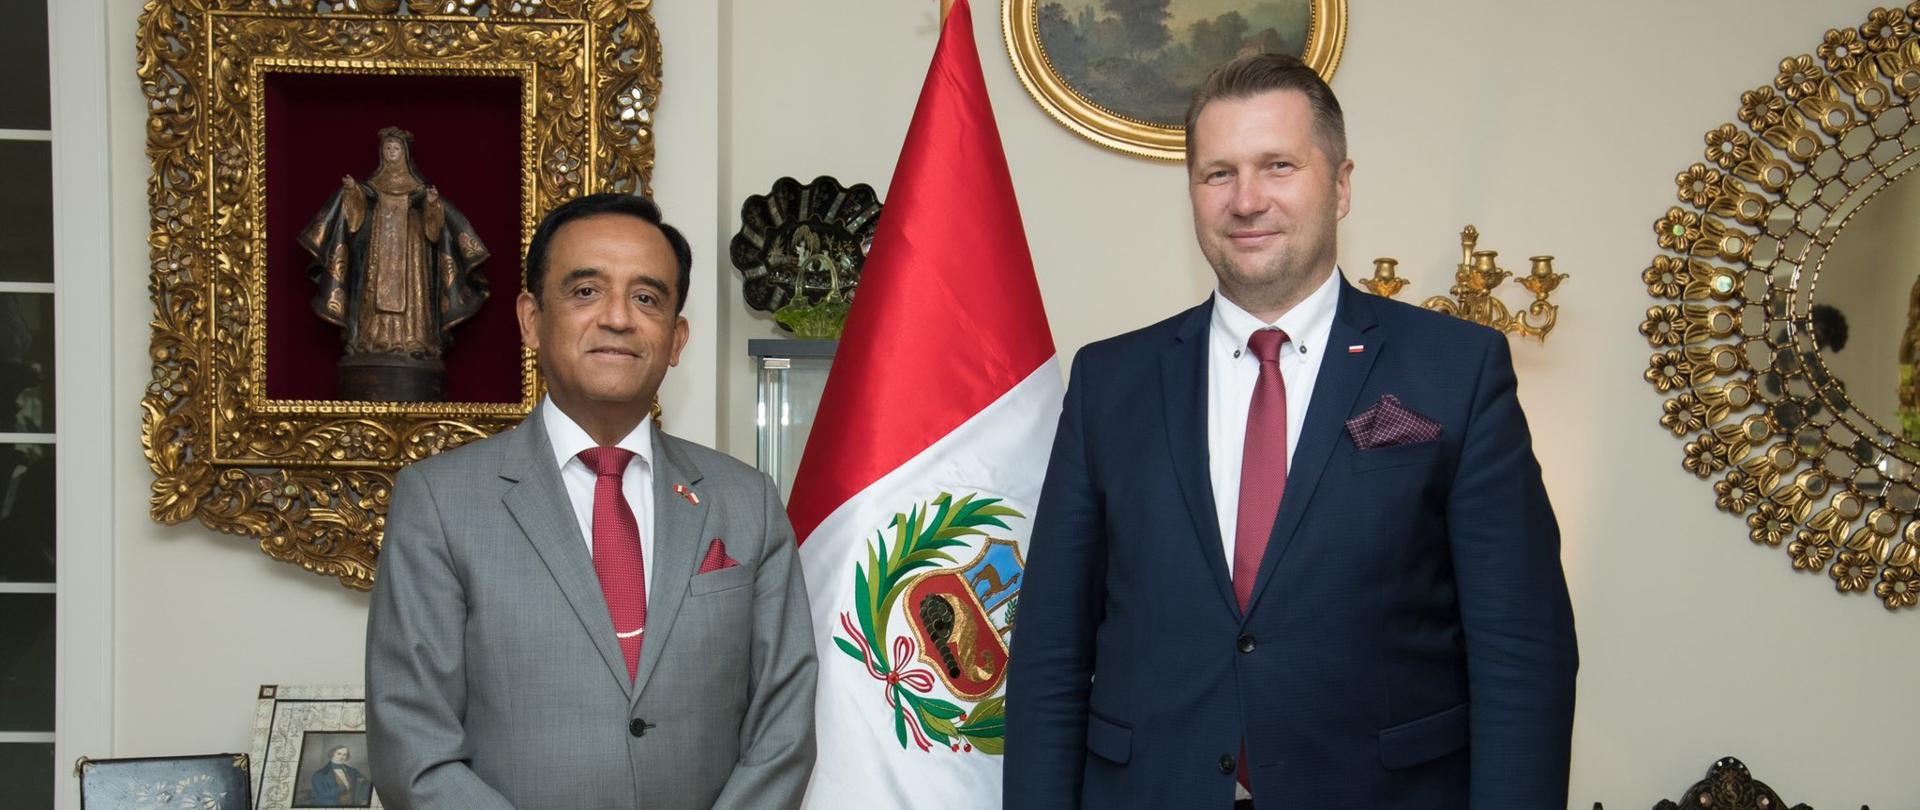 Ambasador Peru w Polsce i Minister Edukacji i Nauki stoją obok siebie w bogato urządzonym pomieszczeniu z flaga Peru w tle.